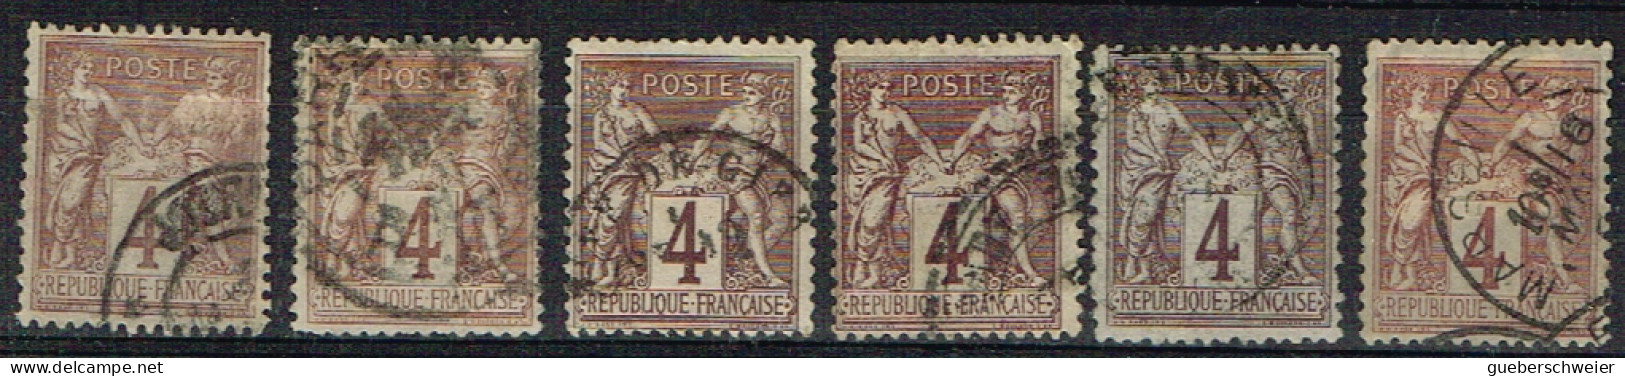 FR-CL91 - FRANCE Lot De 6 Types Sages Obl. N° 88 Avec Variétés De Teintes Et D'oblitérations - 1876-1898 Sage (Type II)